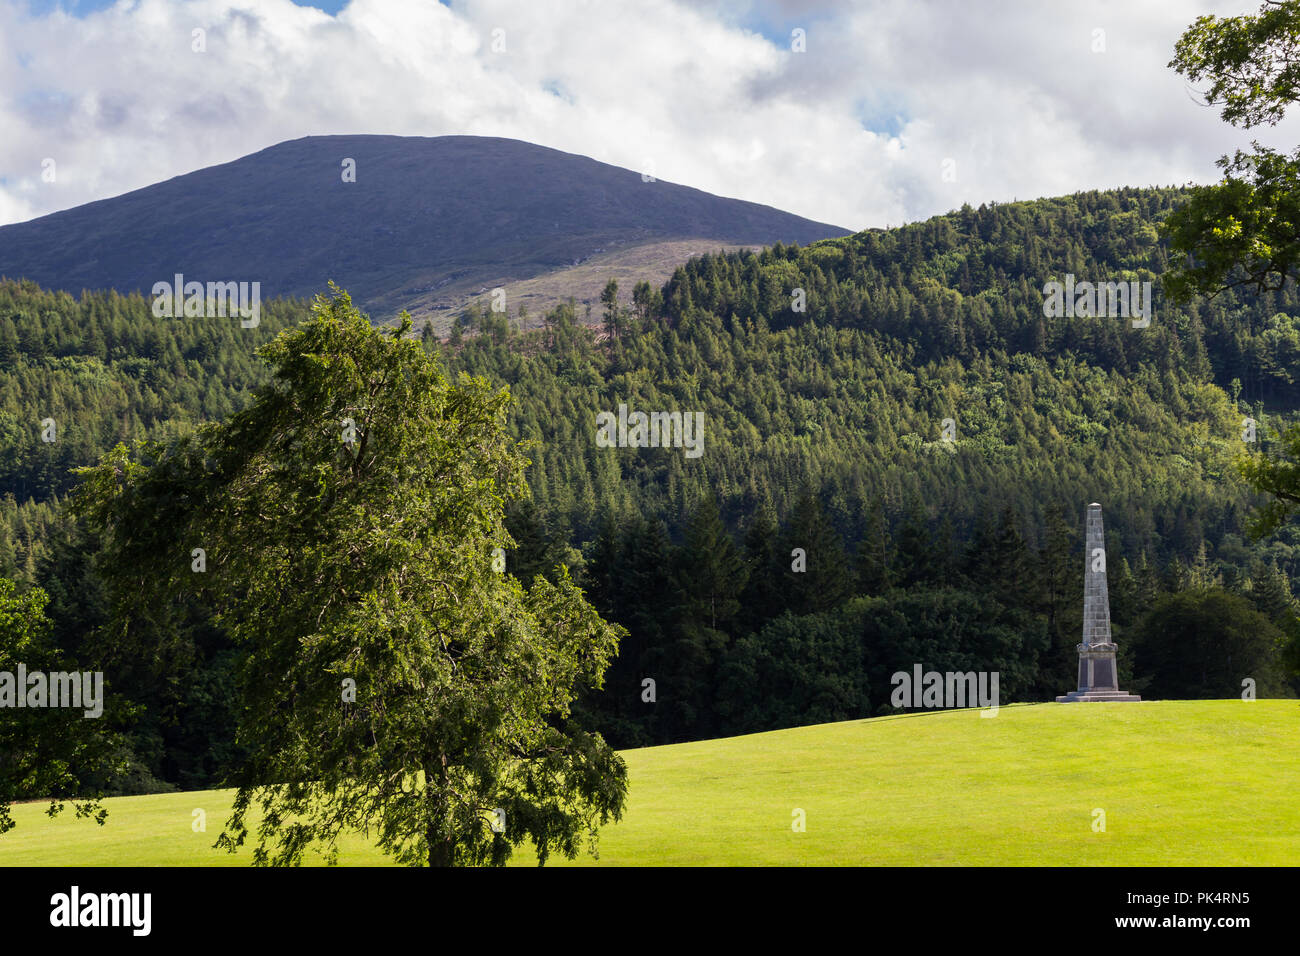 Obélisque commémoratif sur une colline avec des montagnes de Mourne et derrière la forêt dans la distance. Tollymore Forest Park, Newcastle, N.Ireland. Banque D'Images